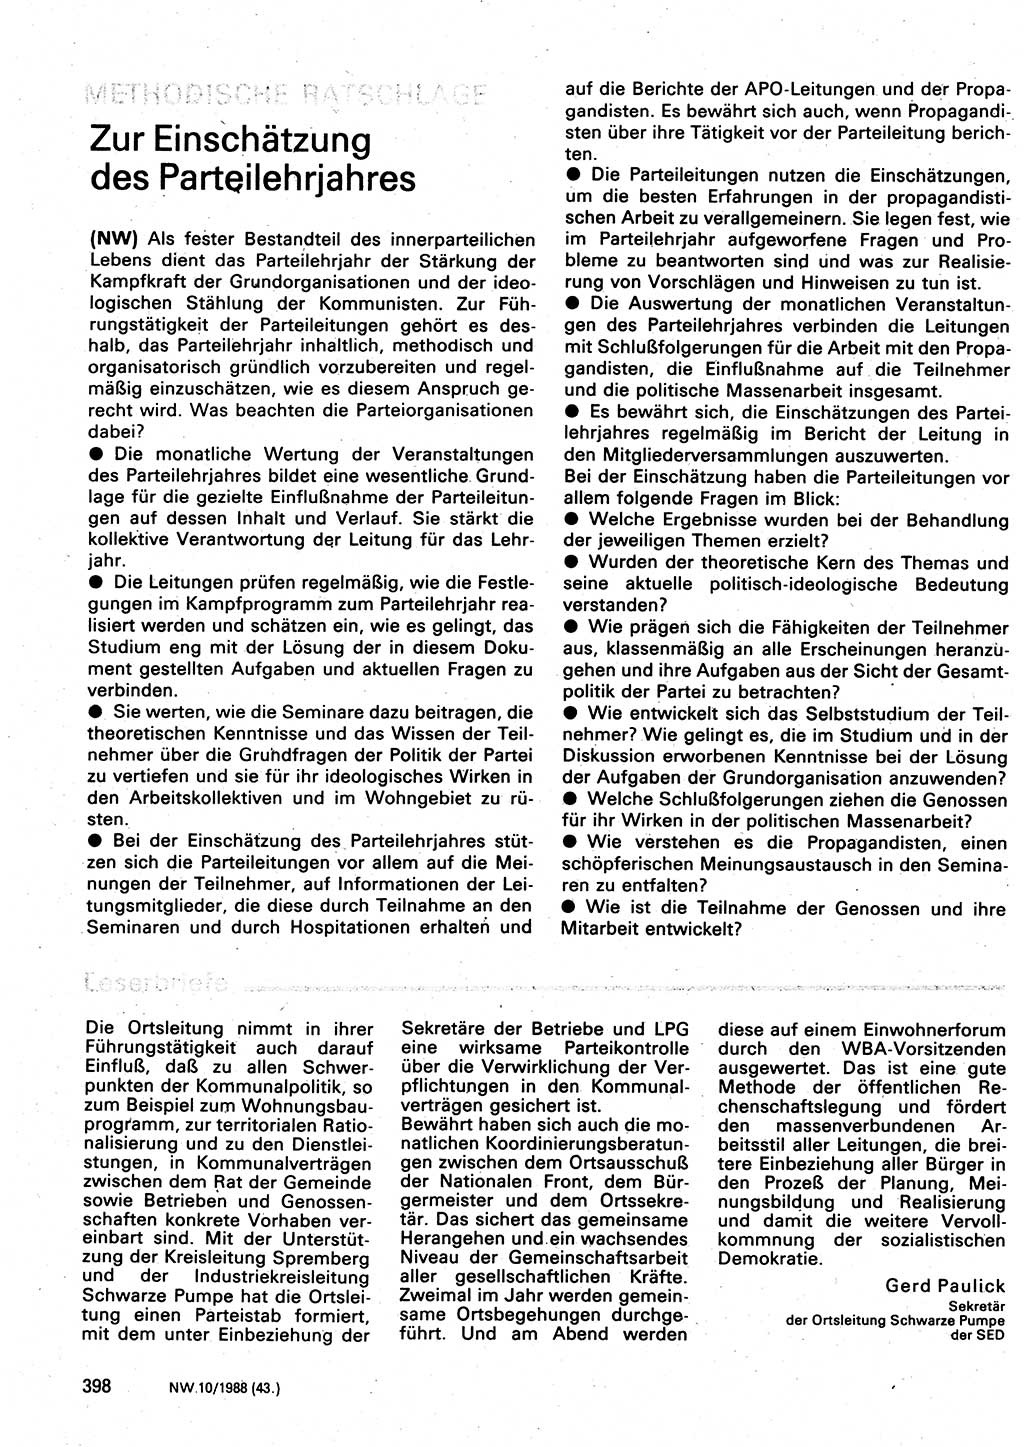 Neuer Weg (NW), Organ des Zentralkomitees (ZK) der SED (Sozialistische Einheitspartei Deutschlands) für Fragen des Parteilebens, 43. Jahrgang [Deutsche Demokratische Republik (DDR)] 1988, Seite 398 (NW ZK SED DDR 1988, S. 398)